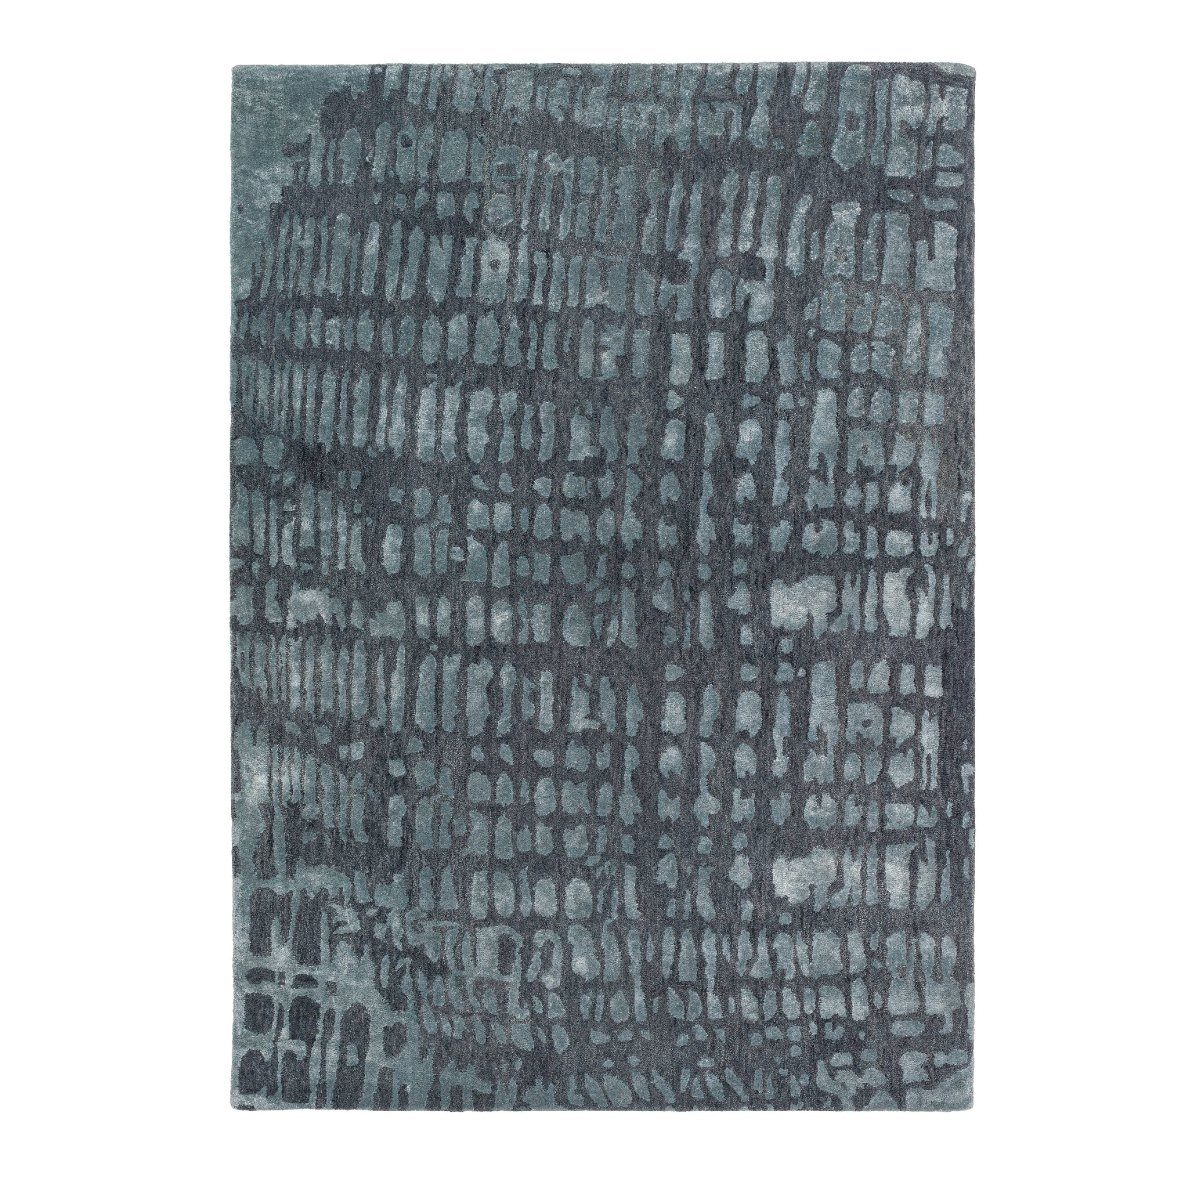 JOOP! Croco Teppich mit Muster in Grau als Freisteller.